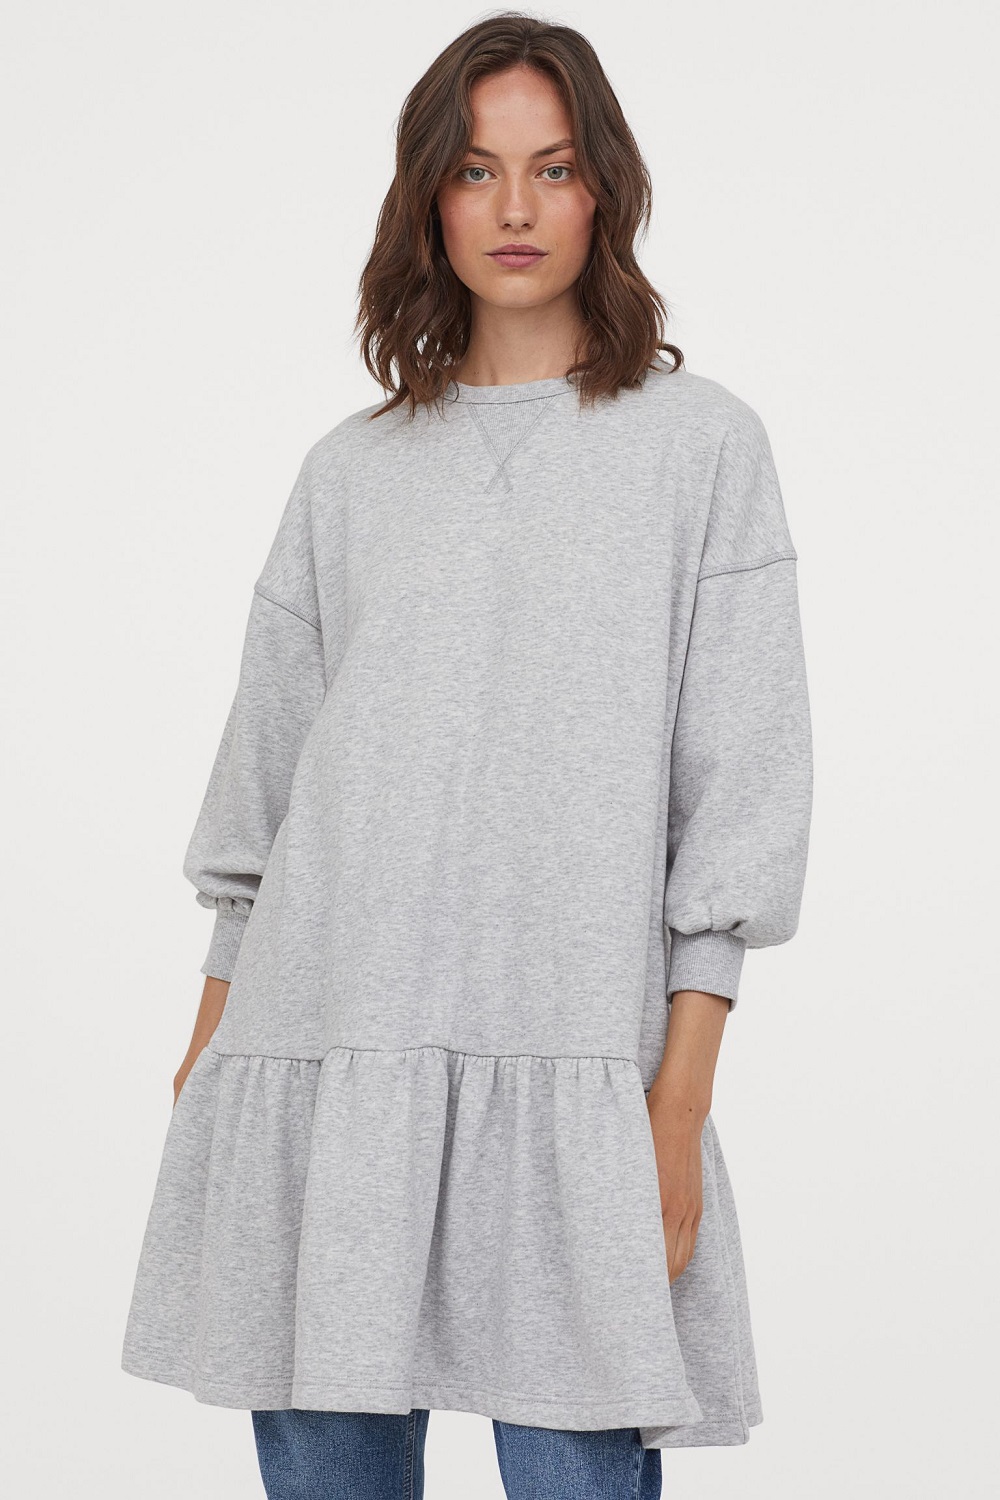 H&M sweatshirt haljine zima 2020.